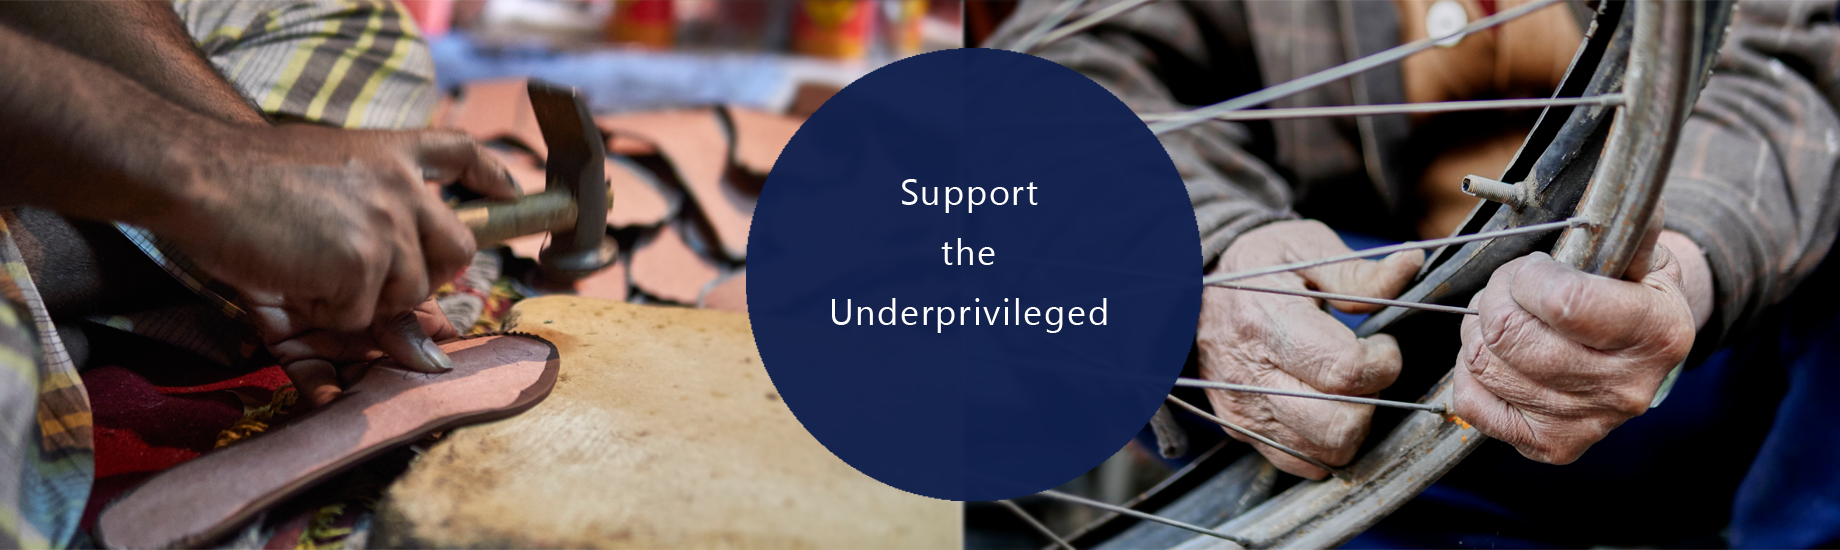 support underprivileged